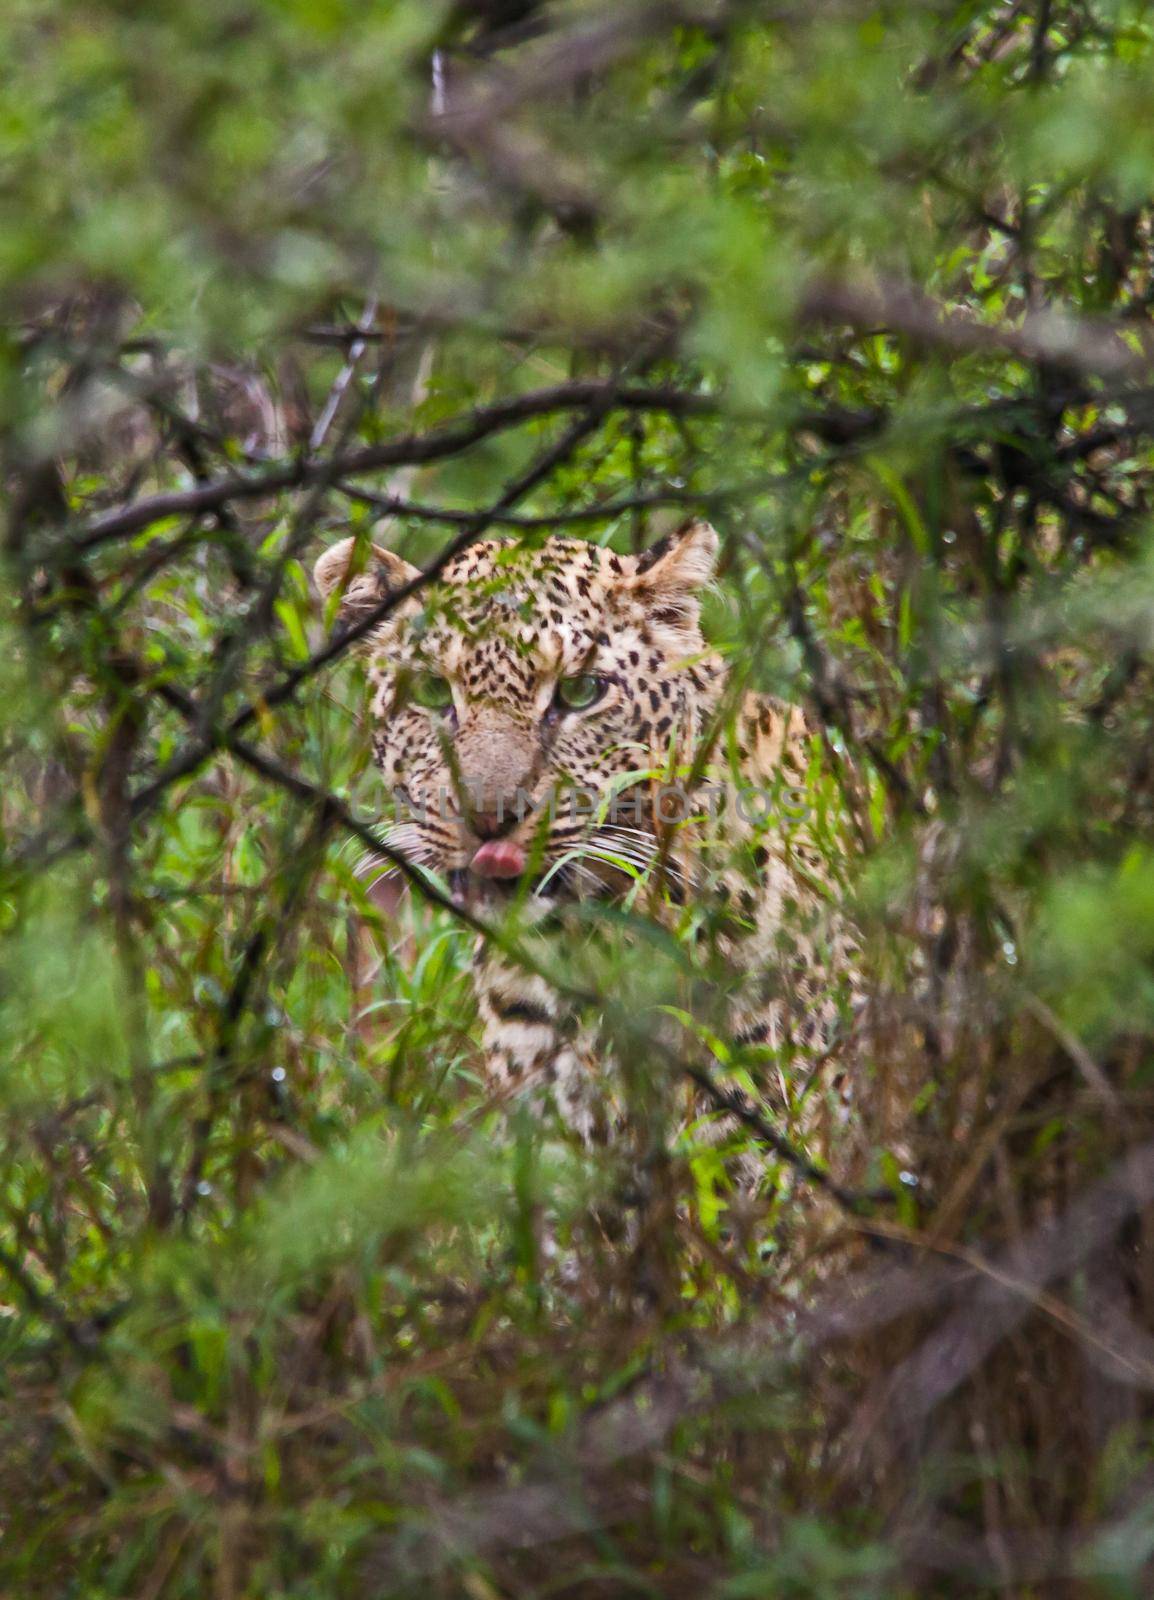 Hiding Leopard (Panthera pardus) 15167 by kobus_peche